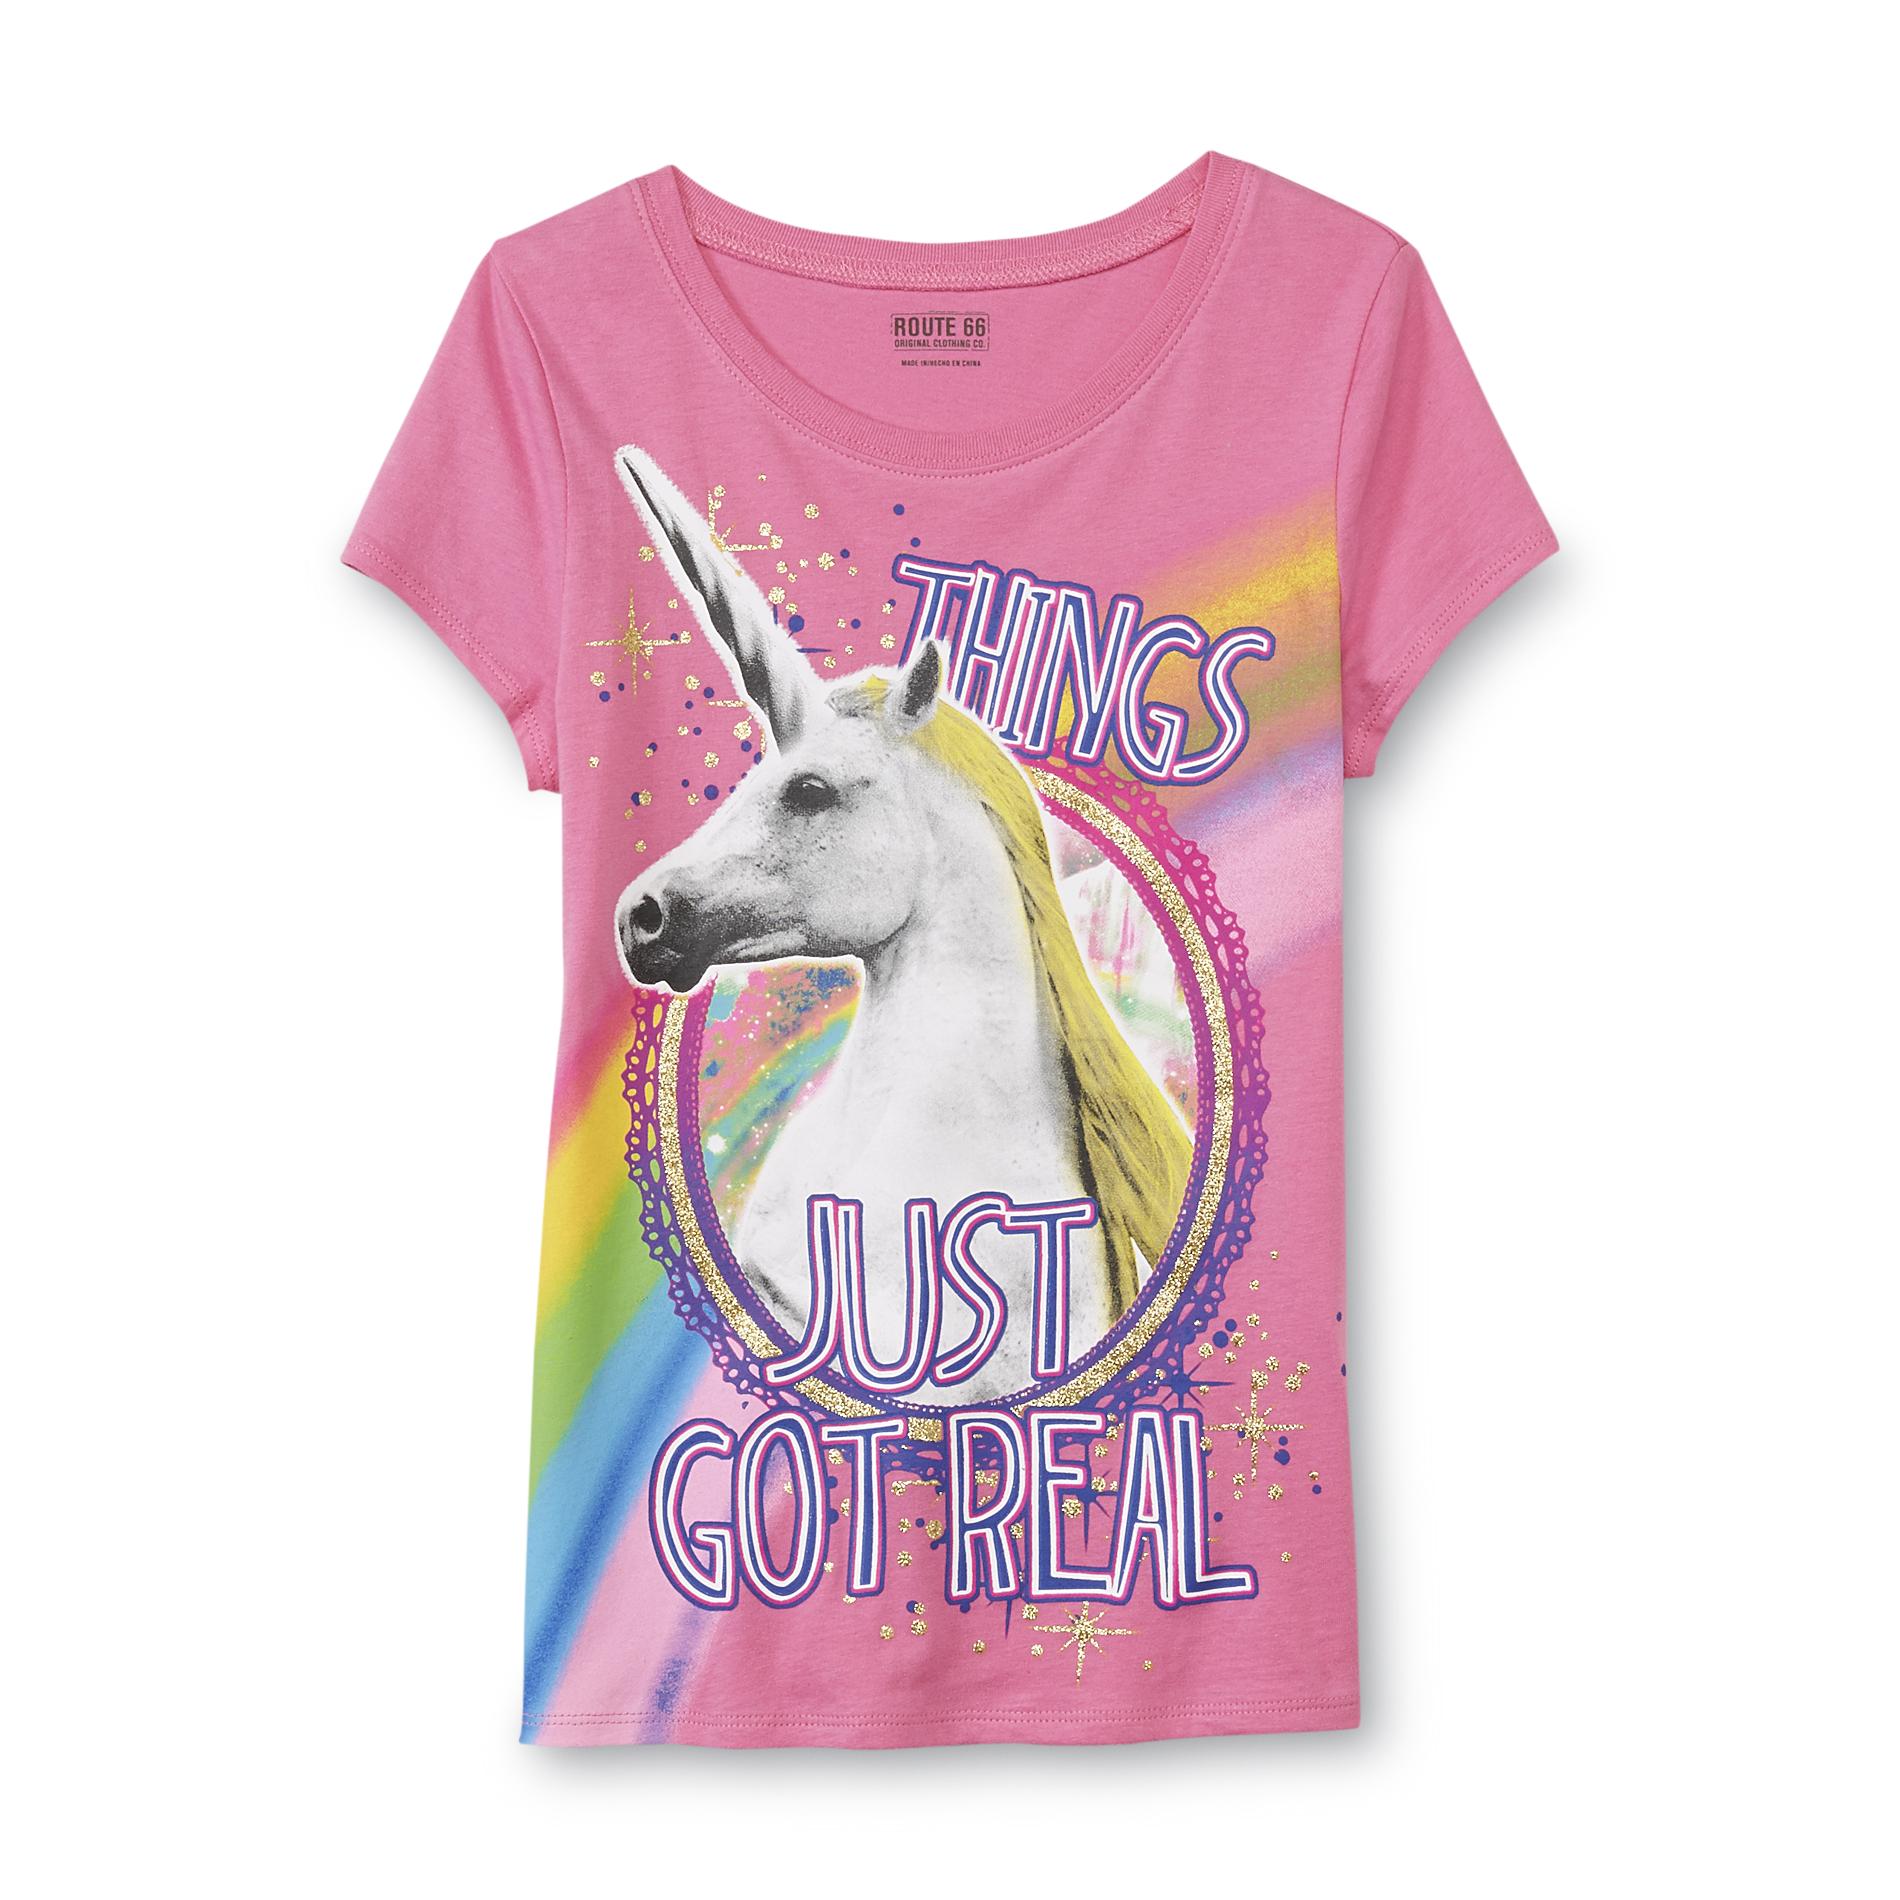 Route 66 Girl's Graphic T-Shirt - Unicorn & Rainbow